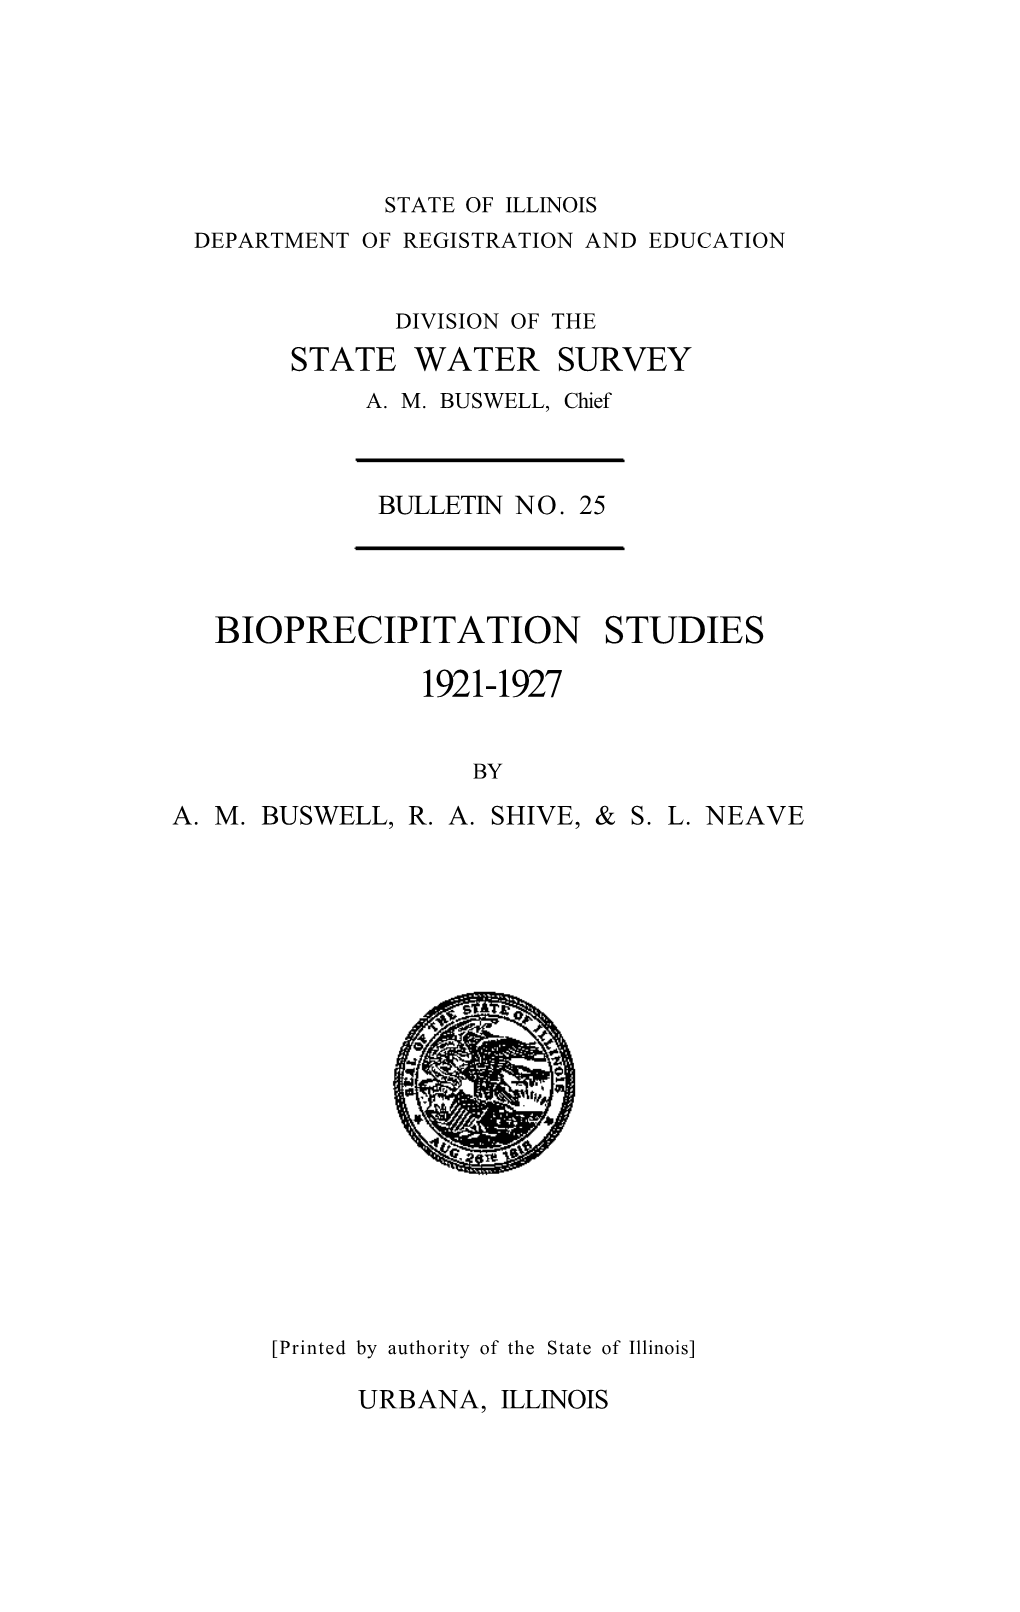 Bioprecipitation Studies, 1921-1927. Springfield, IL